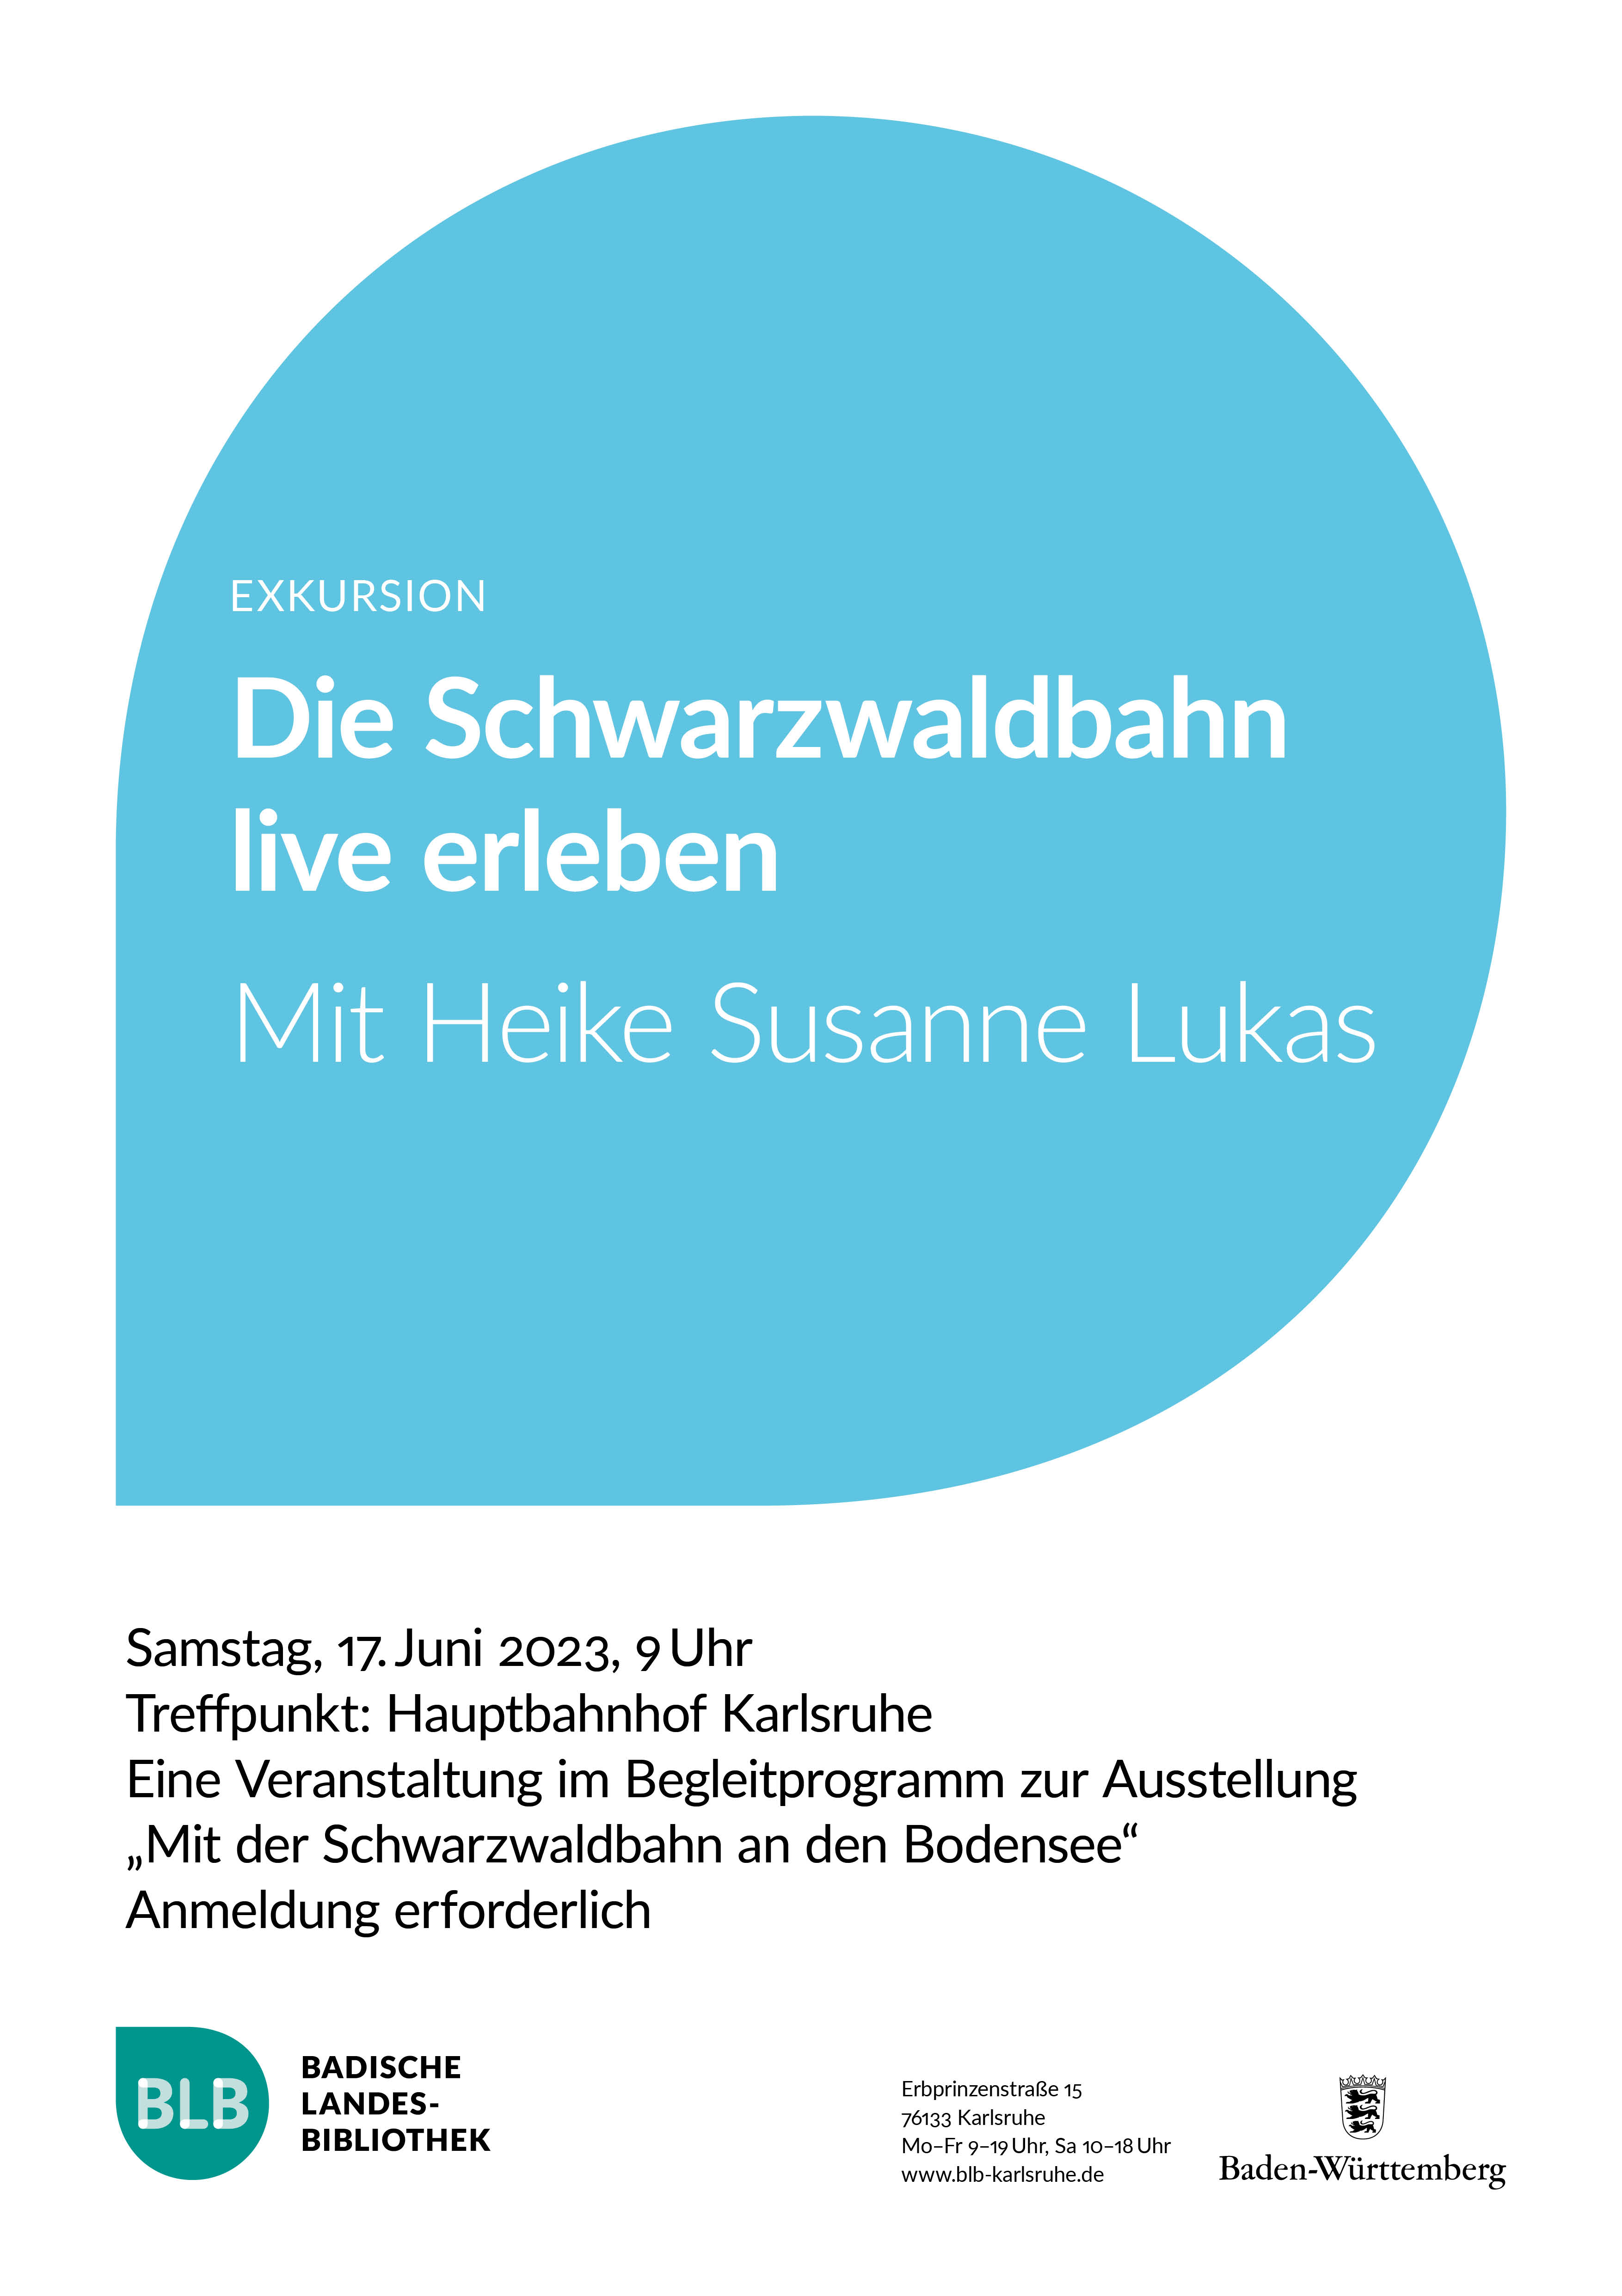 Zu sehen ist ein blaues Monogon mit der Aufschrift "Die Schwarzwaldbahn live erleben". Die Exkursion mit Heike Susanne Lukas findet am Samstag, dem 17. Juni 2023 um 9 Uhr statt. Treffpunkt ist der Hauptbahnhof Karlsruhe. 